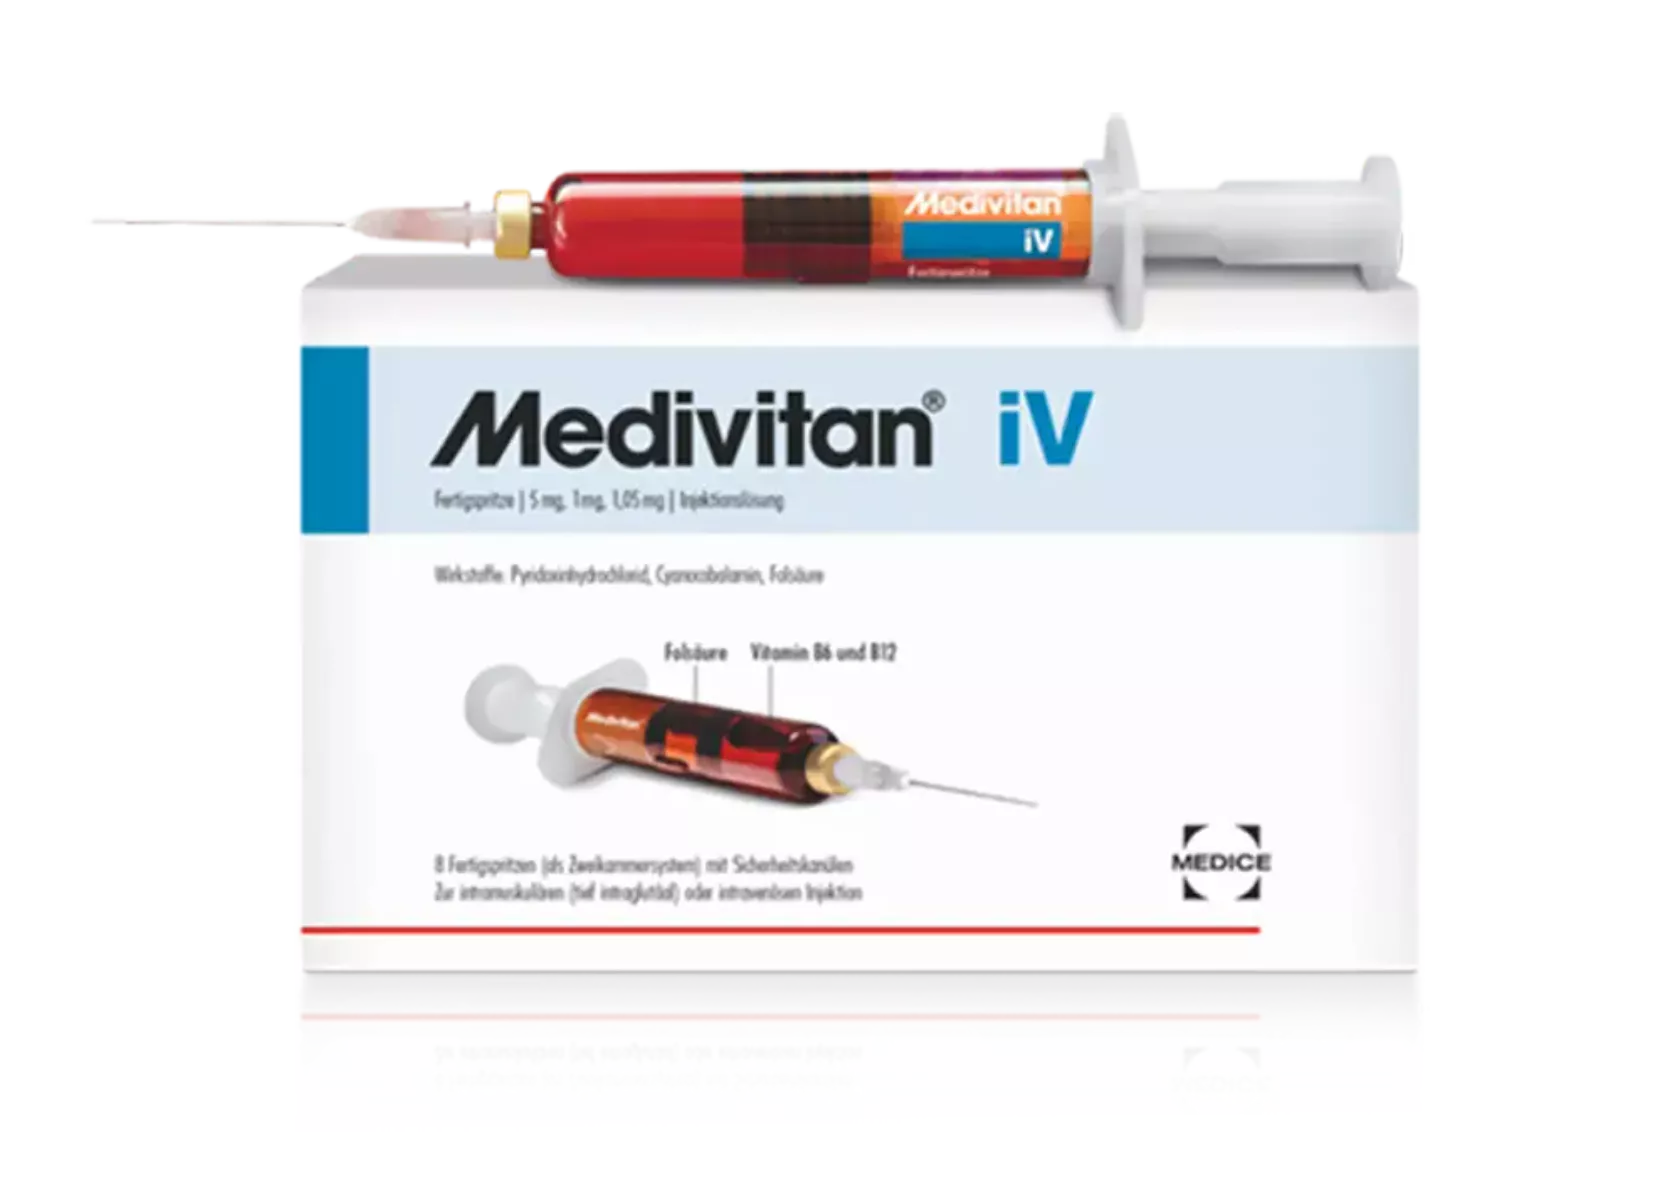 Medivitan iV - Foto der Verpackung mit einer aufgezogenen Spritze.